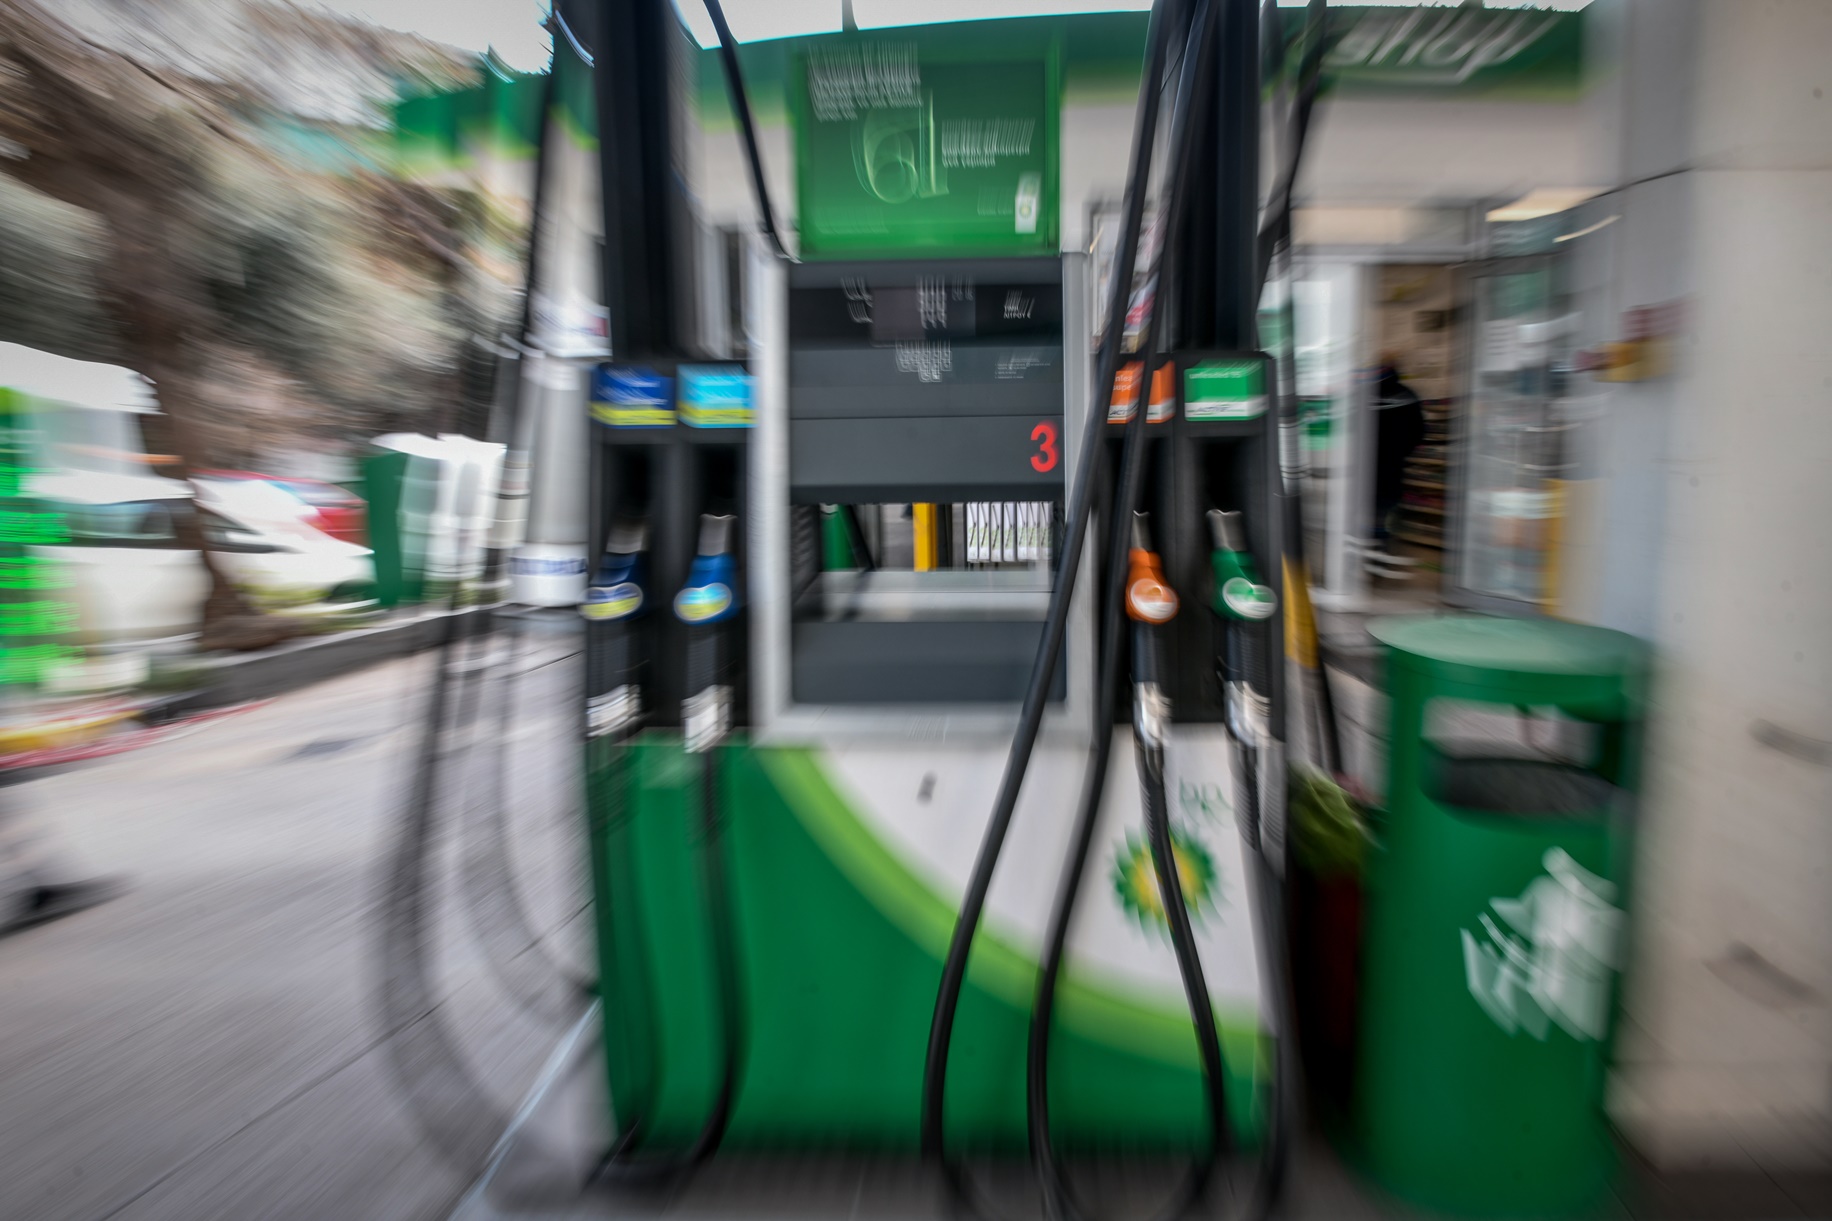 Καύσιμα: Προβλέψεις ότι σύντομα η τιμή θα ανέβει στη ζώνη των 3 ευρώ το λίτρο